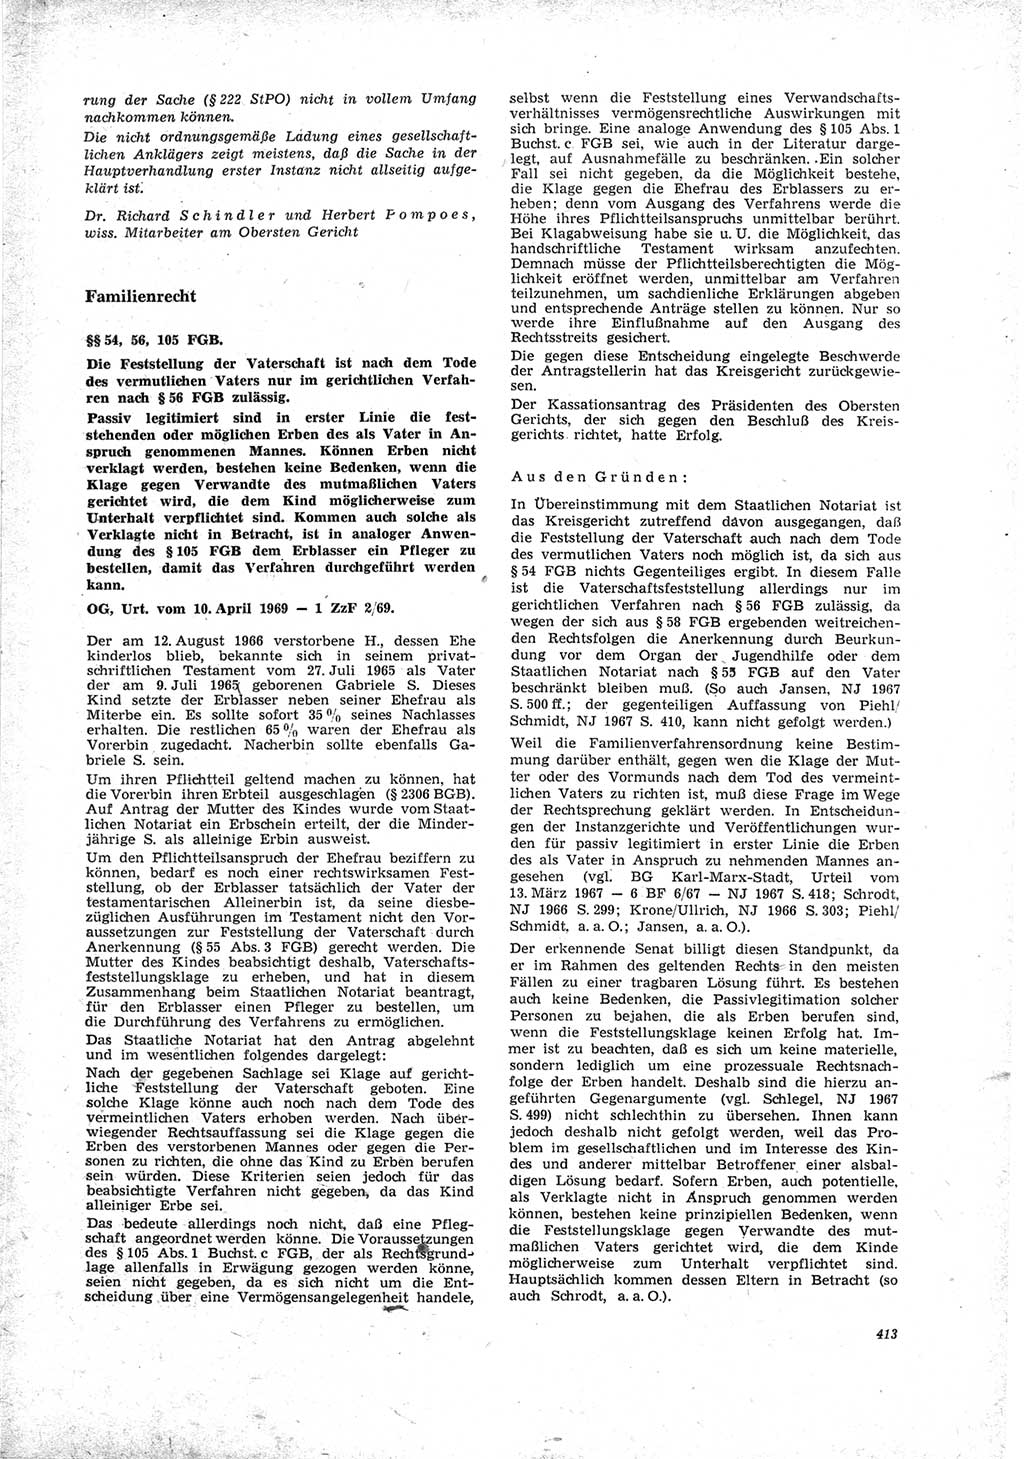 Neue Justiz (NJ), Zeitschrift für Recht und Rechtswissenschaft [Deutsche Demokratische Republik (DDR)], 23. Jahrgang 1969, Seite 413 (NJ DDR 1969, S. 413)